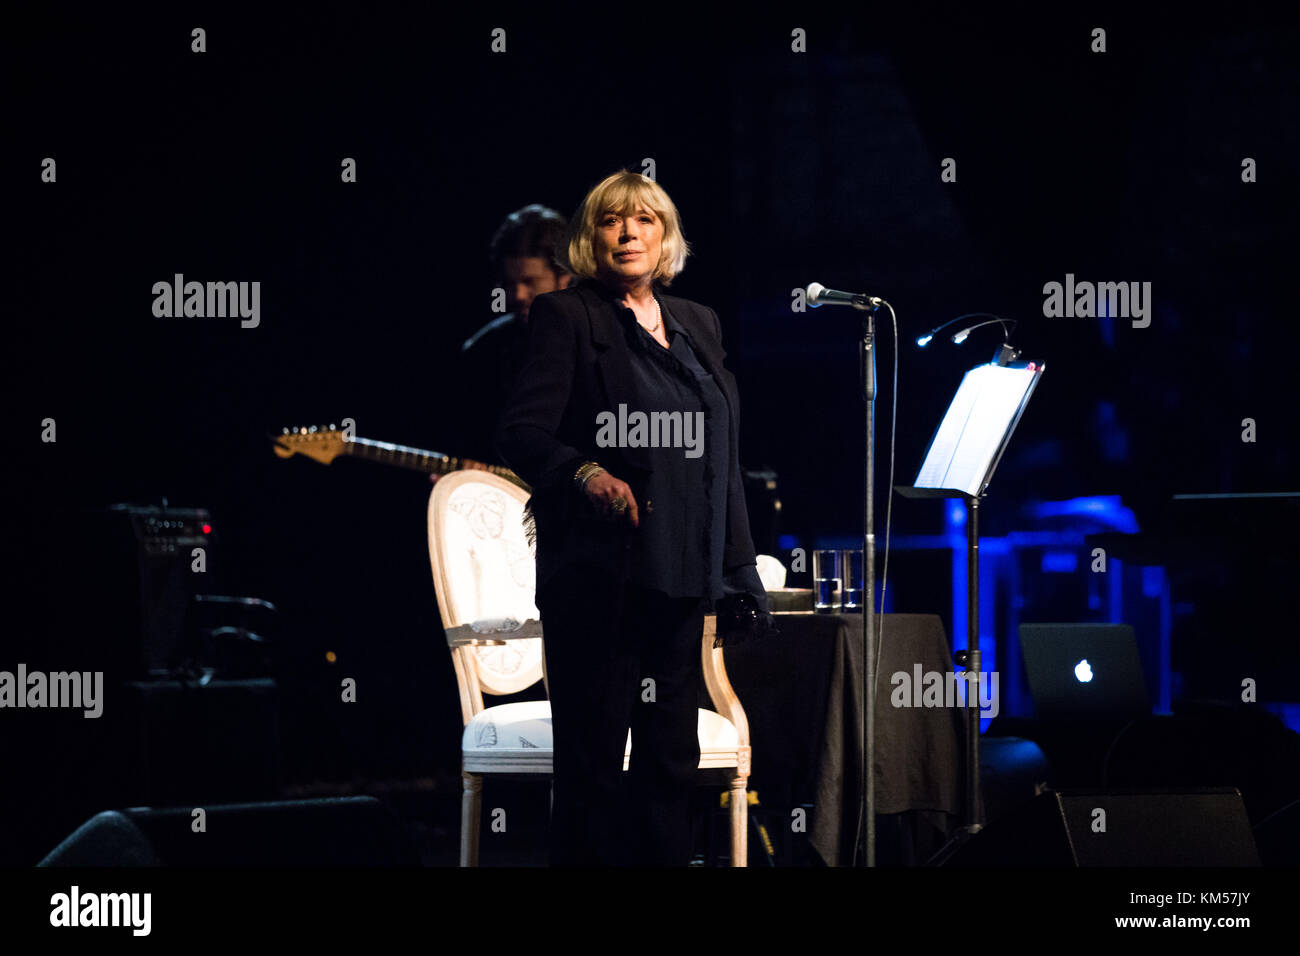 La cantante, cantautrice e attrice inglese Marianne Faithfull ha tenuto un concerto dal vivo al Capitol Theatre durante il festival di musica tedesca New Fall Festival 2015 a Düsseldorf. Germania, 31/10 2015. Foto Stock